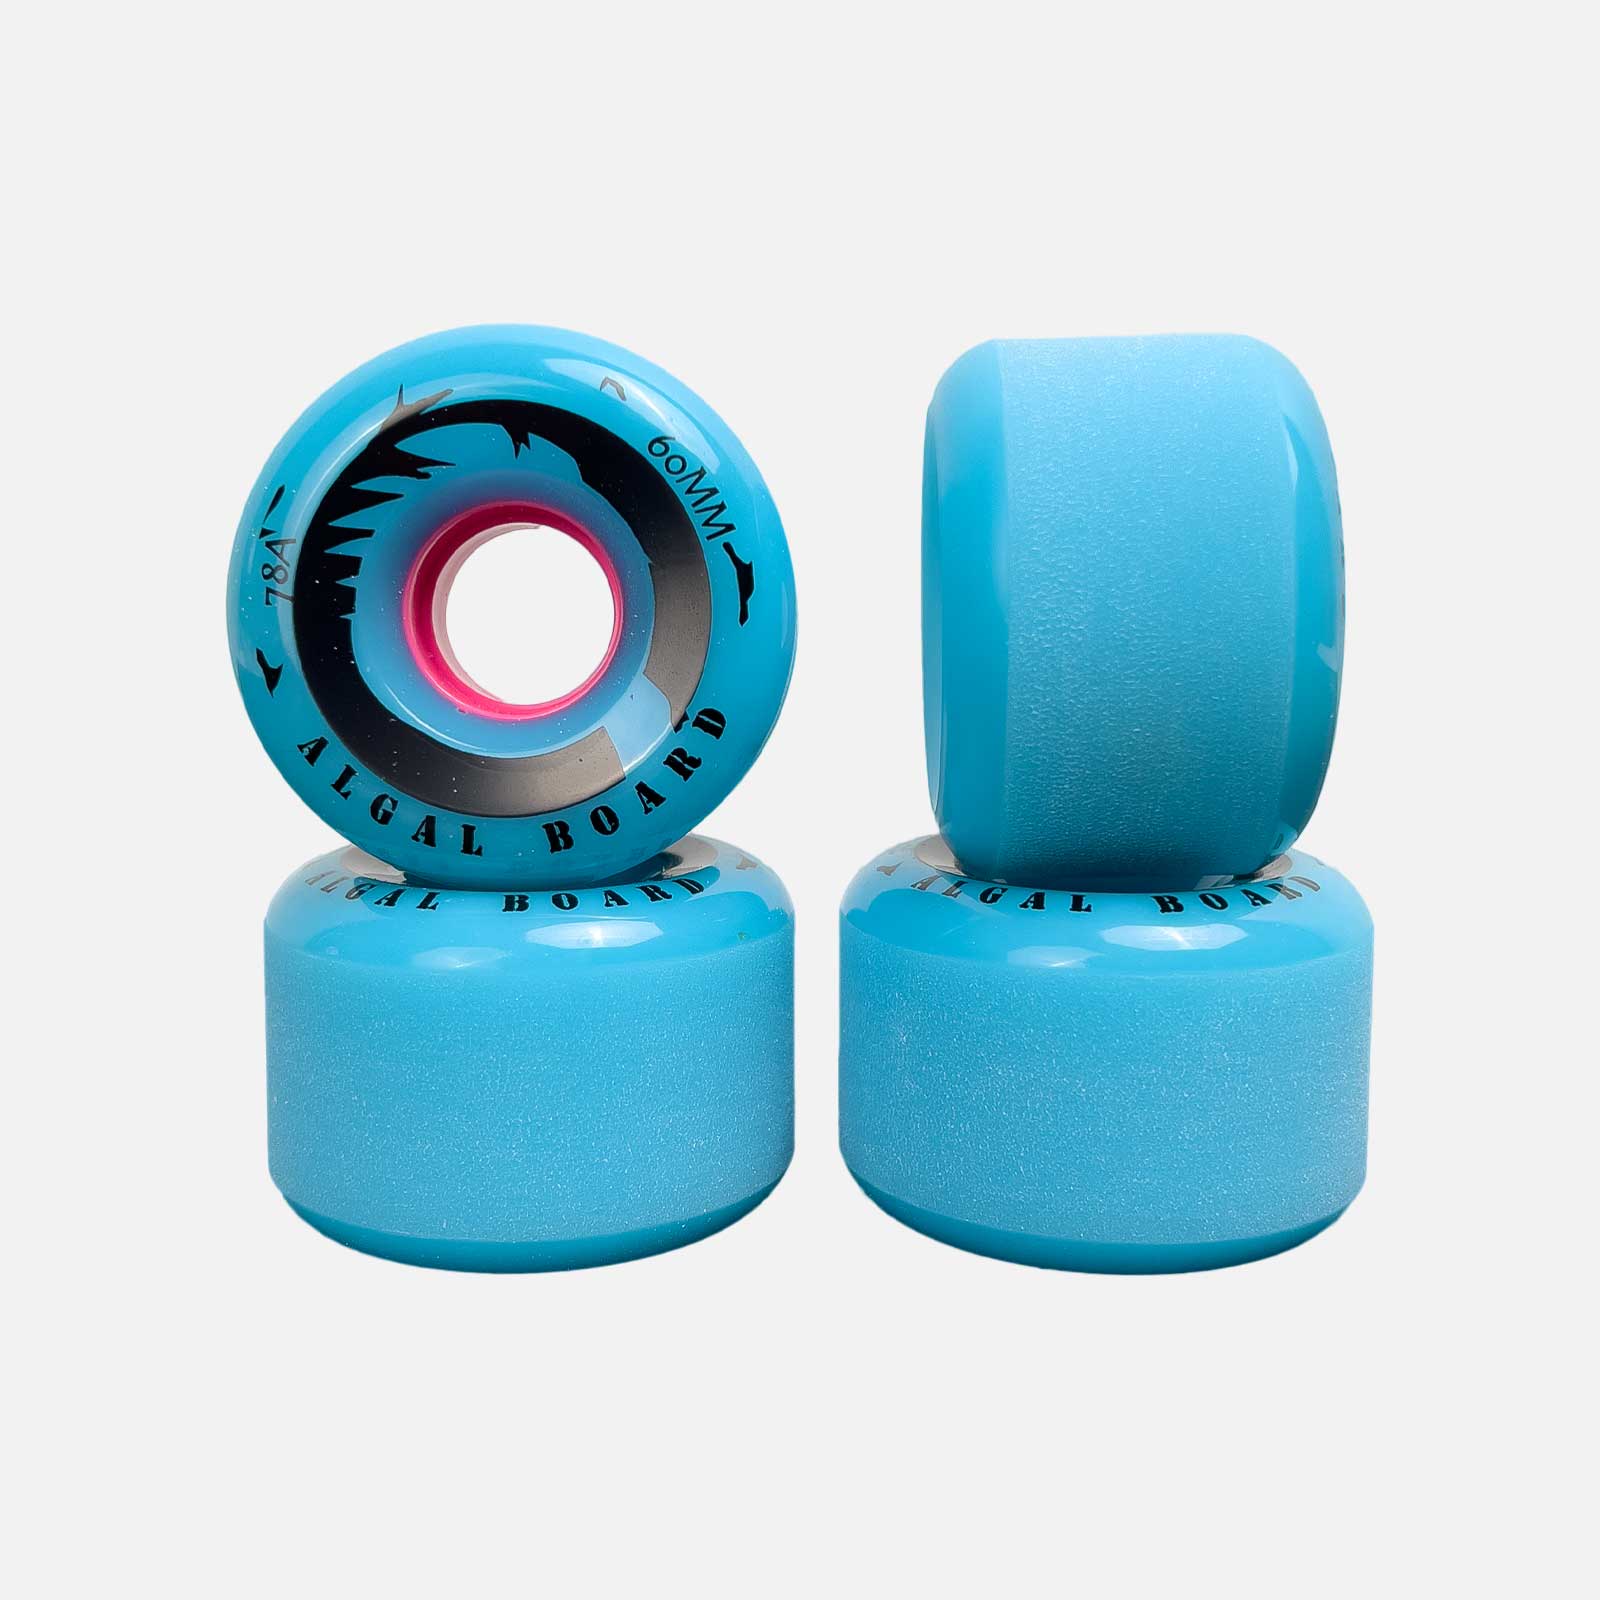 Ruote per Skateboard 60 mm - Versatilità e Divertimento | Algal Board